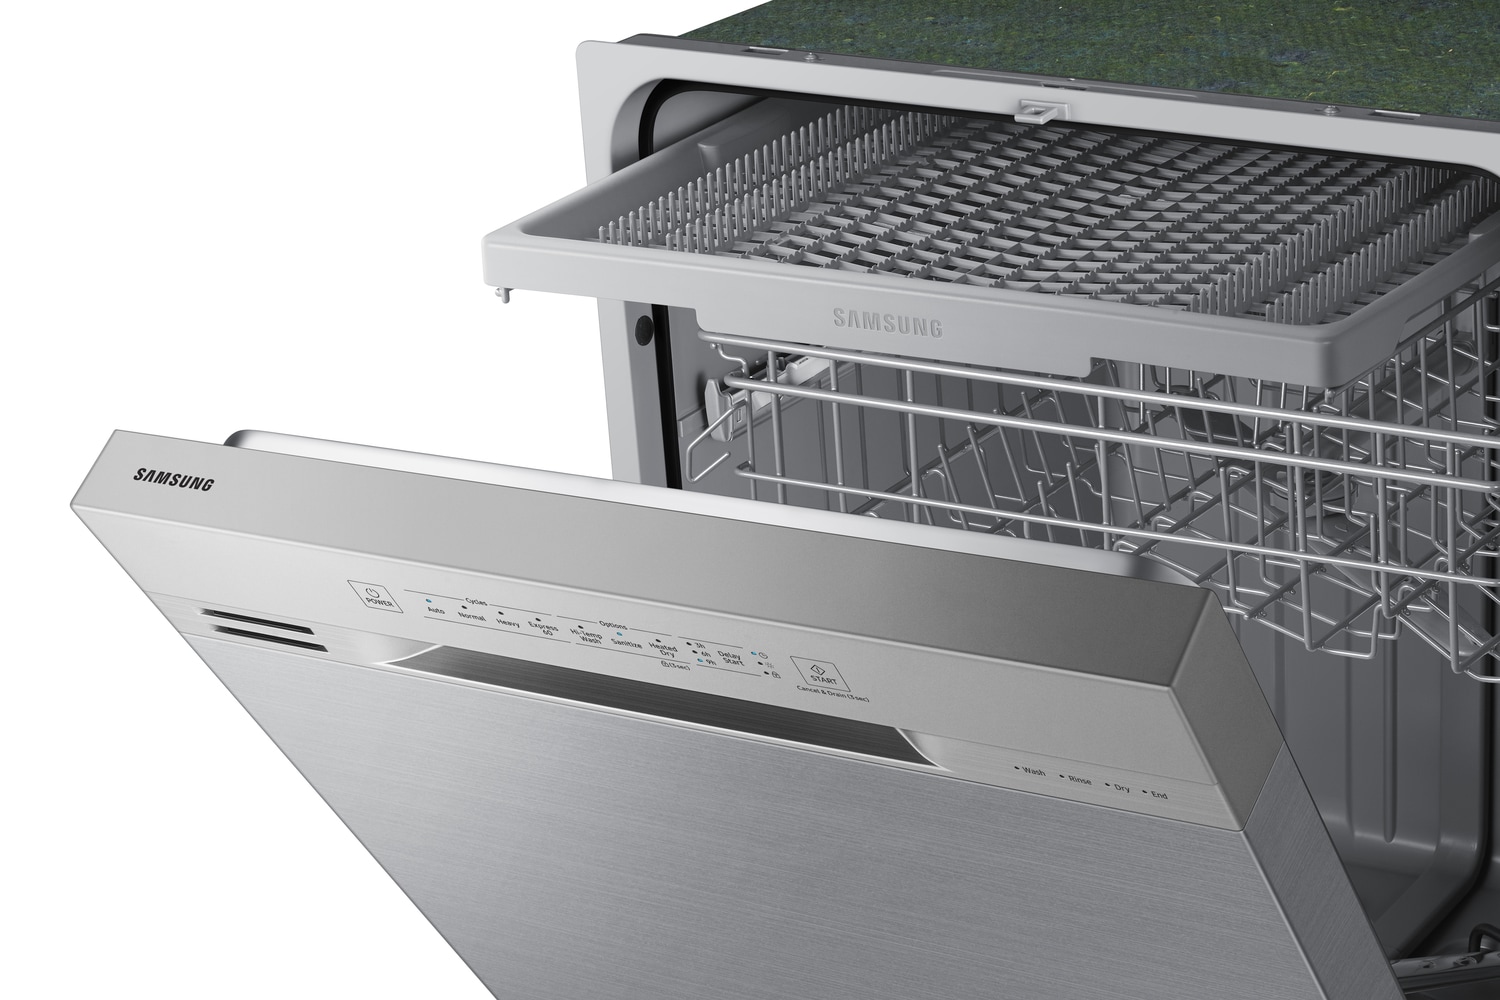 Samsung 24 Front Control Built-In Dishwasher White DW80N3030UW - Best Buy